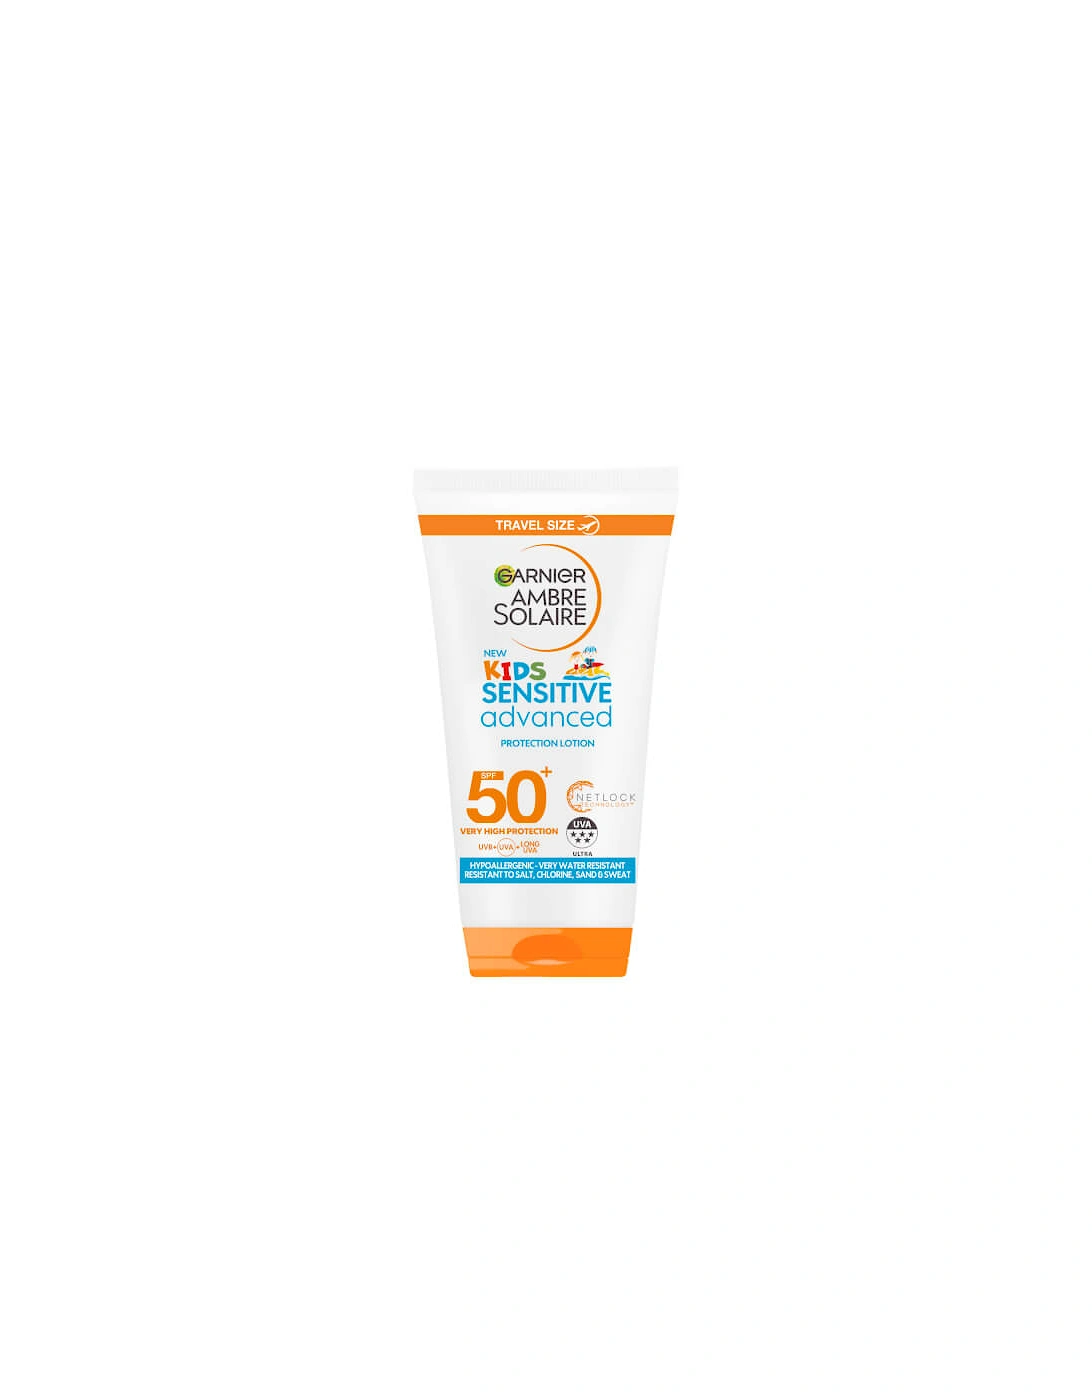 Ambre Solaire Kids Sensitive Sun Cream SPF 50+ 50ml Travel Size - Garnier, 2 of 1